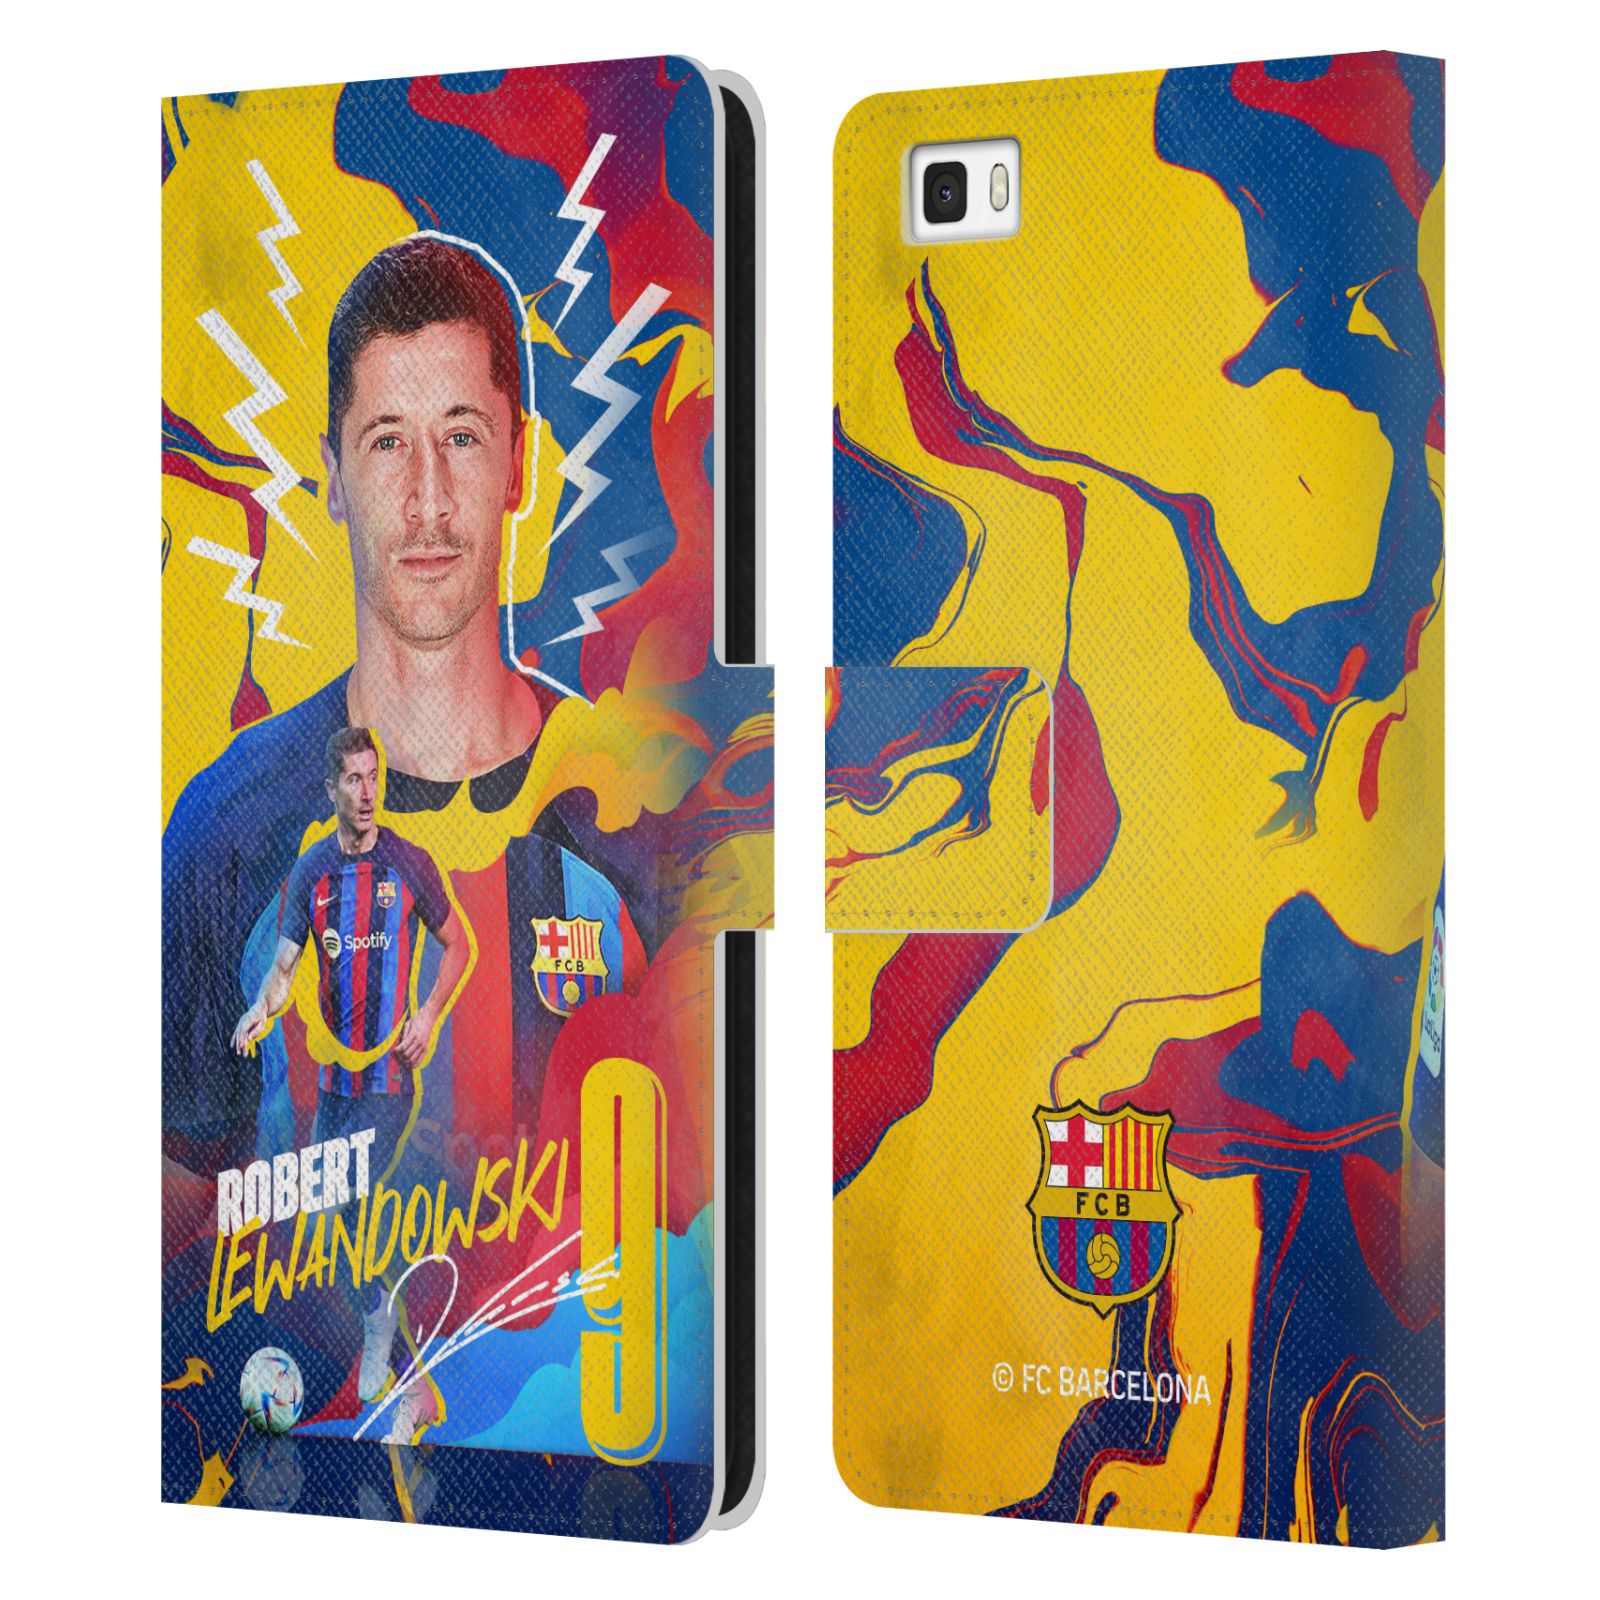 Pouzdro na mobil Huawei P8 LITE - HEAD CASE - FC Barcelona - Hráč Robert Lewandowski